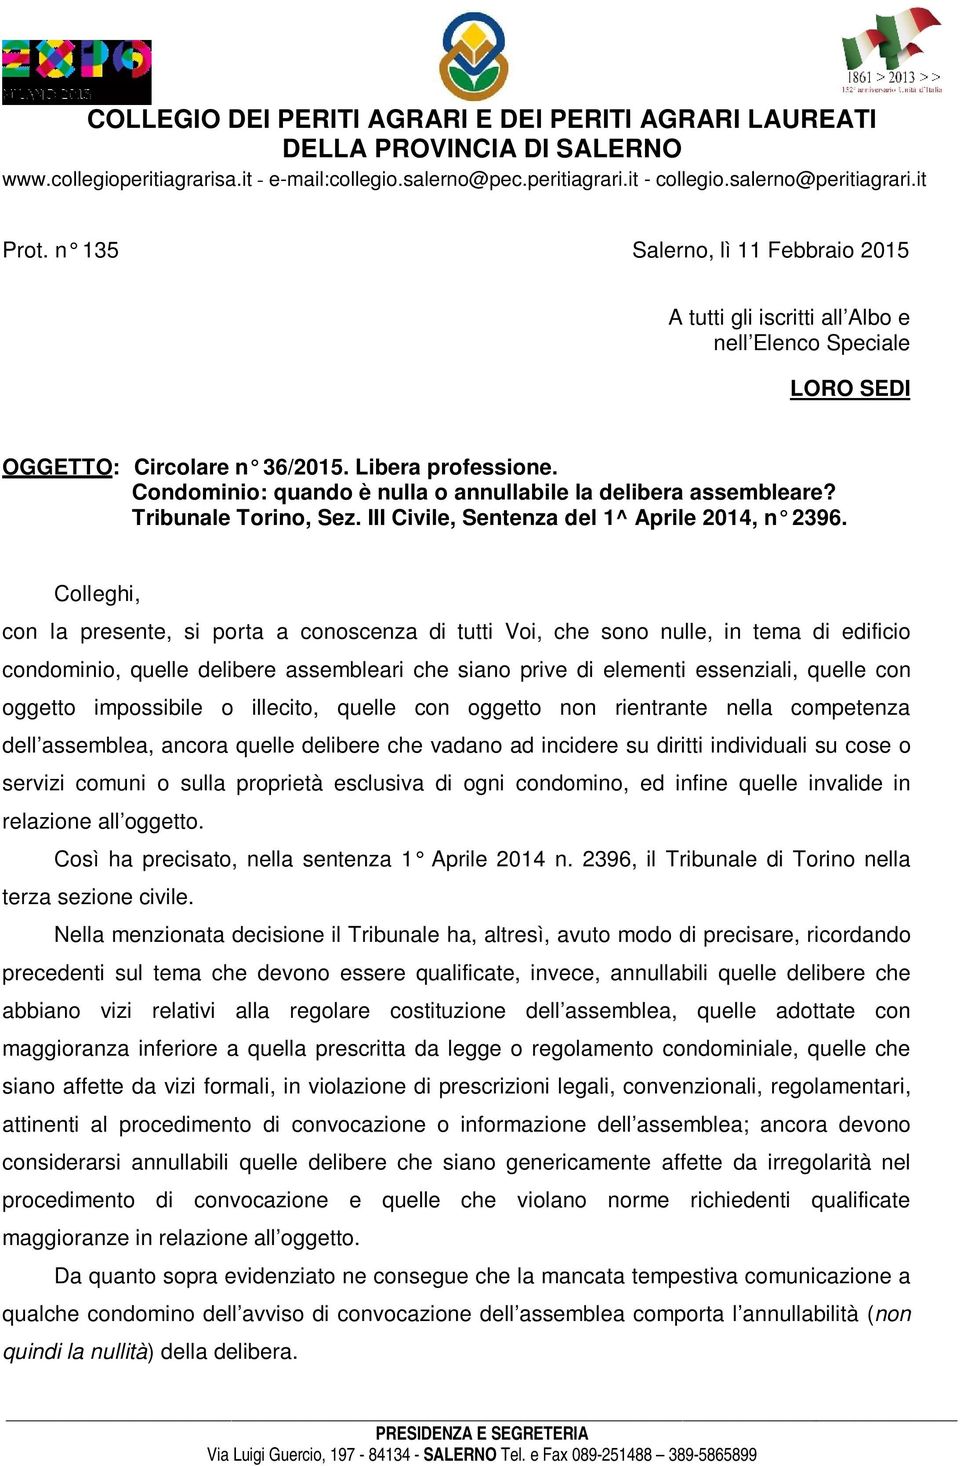 Condominio: quando è nulla o annullabile la delibera assembleare? Tribunale Torino, Sez. III Civile, Sentenza del 1^ Aprile 2014, n 2396.